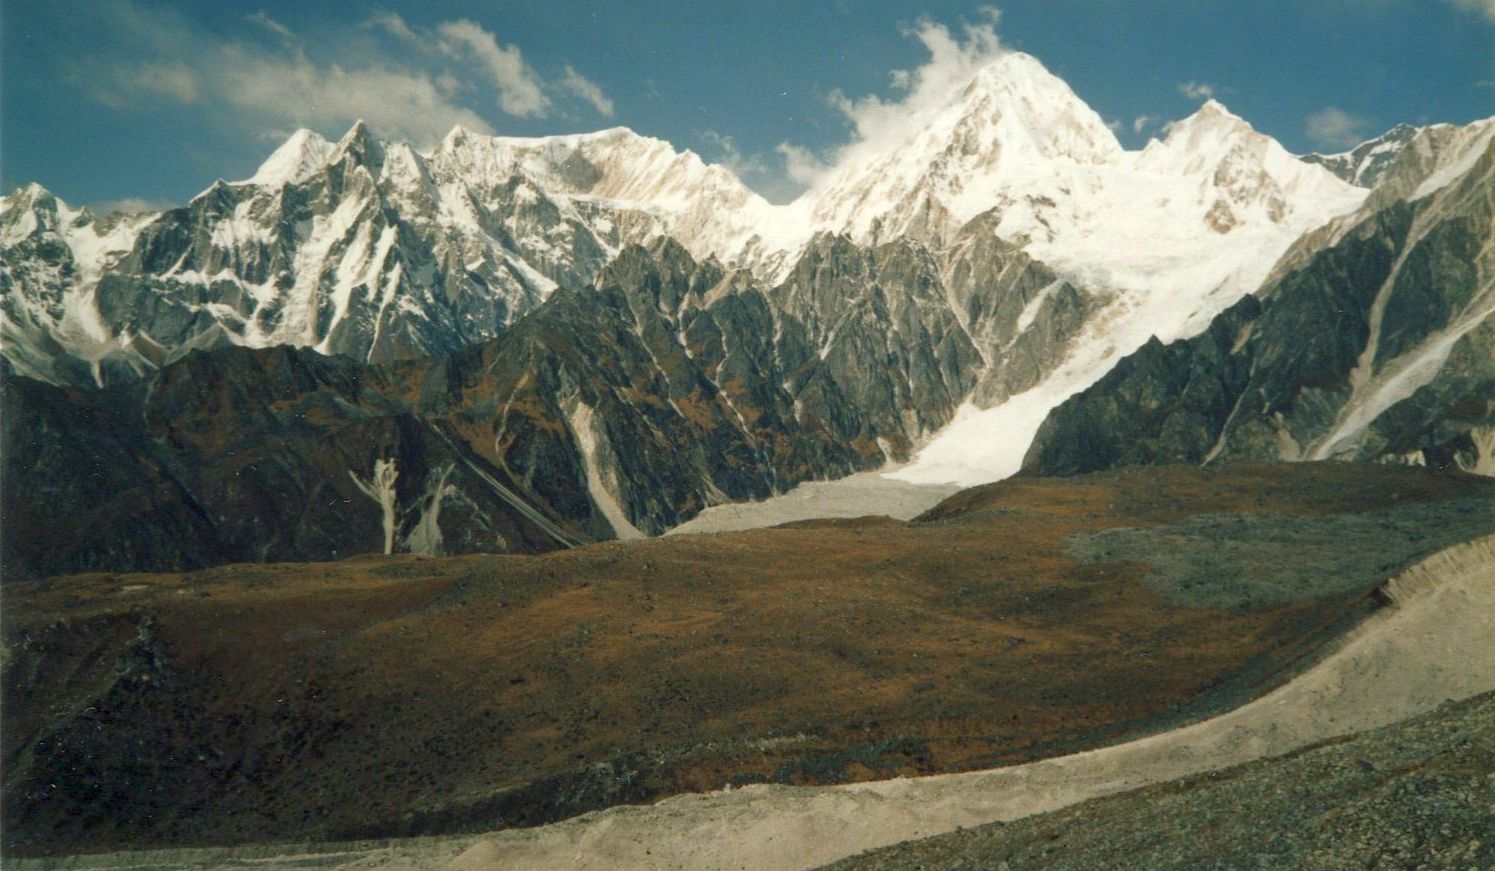 Himlung Himal ( 7126m ) in The Peri Himal